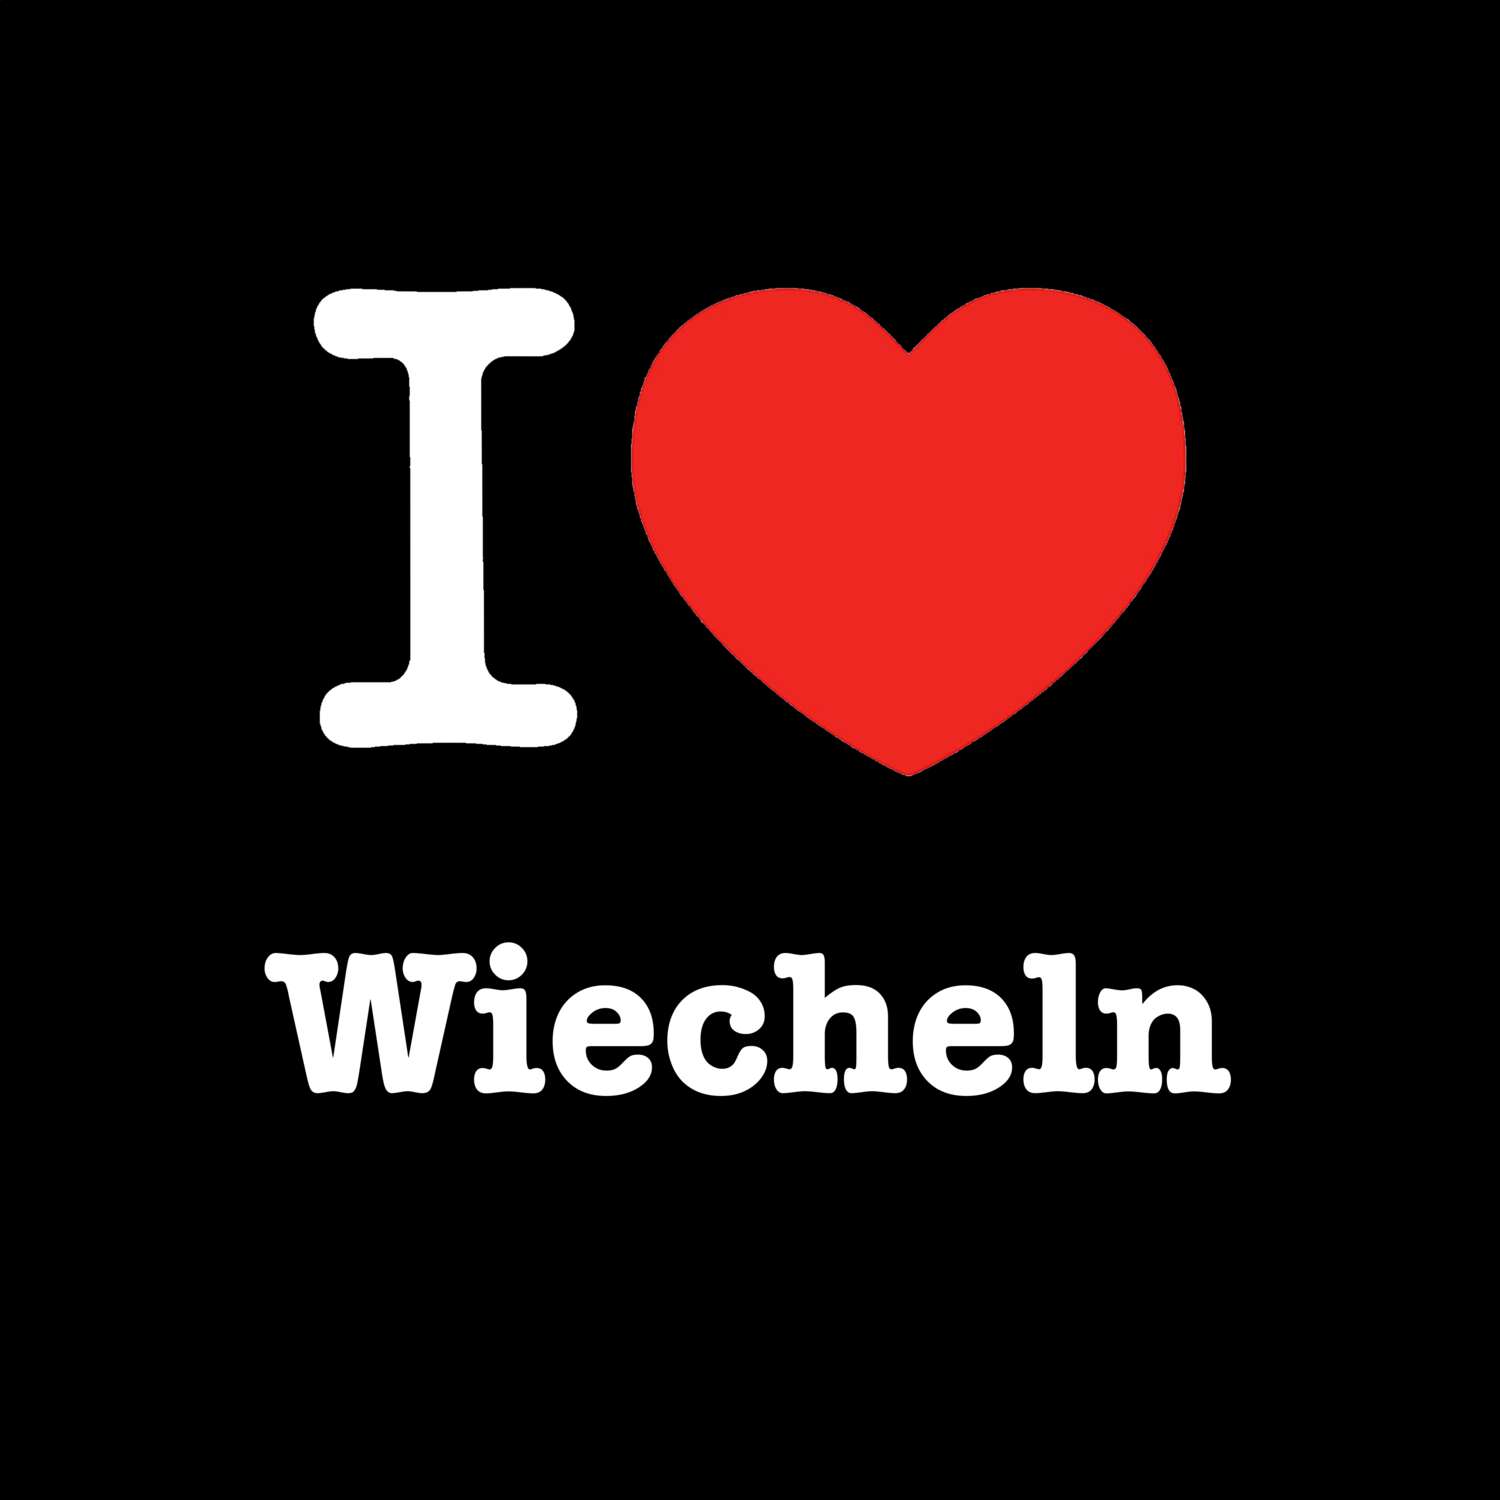 Wiecheln T-Shirt »I love«